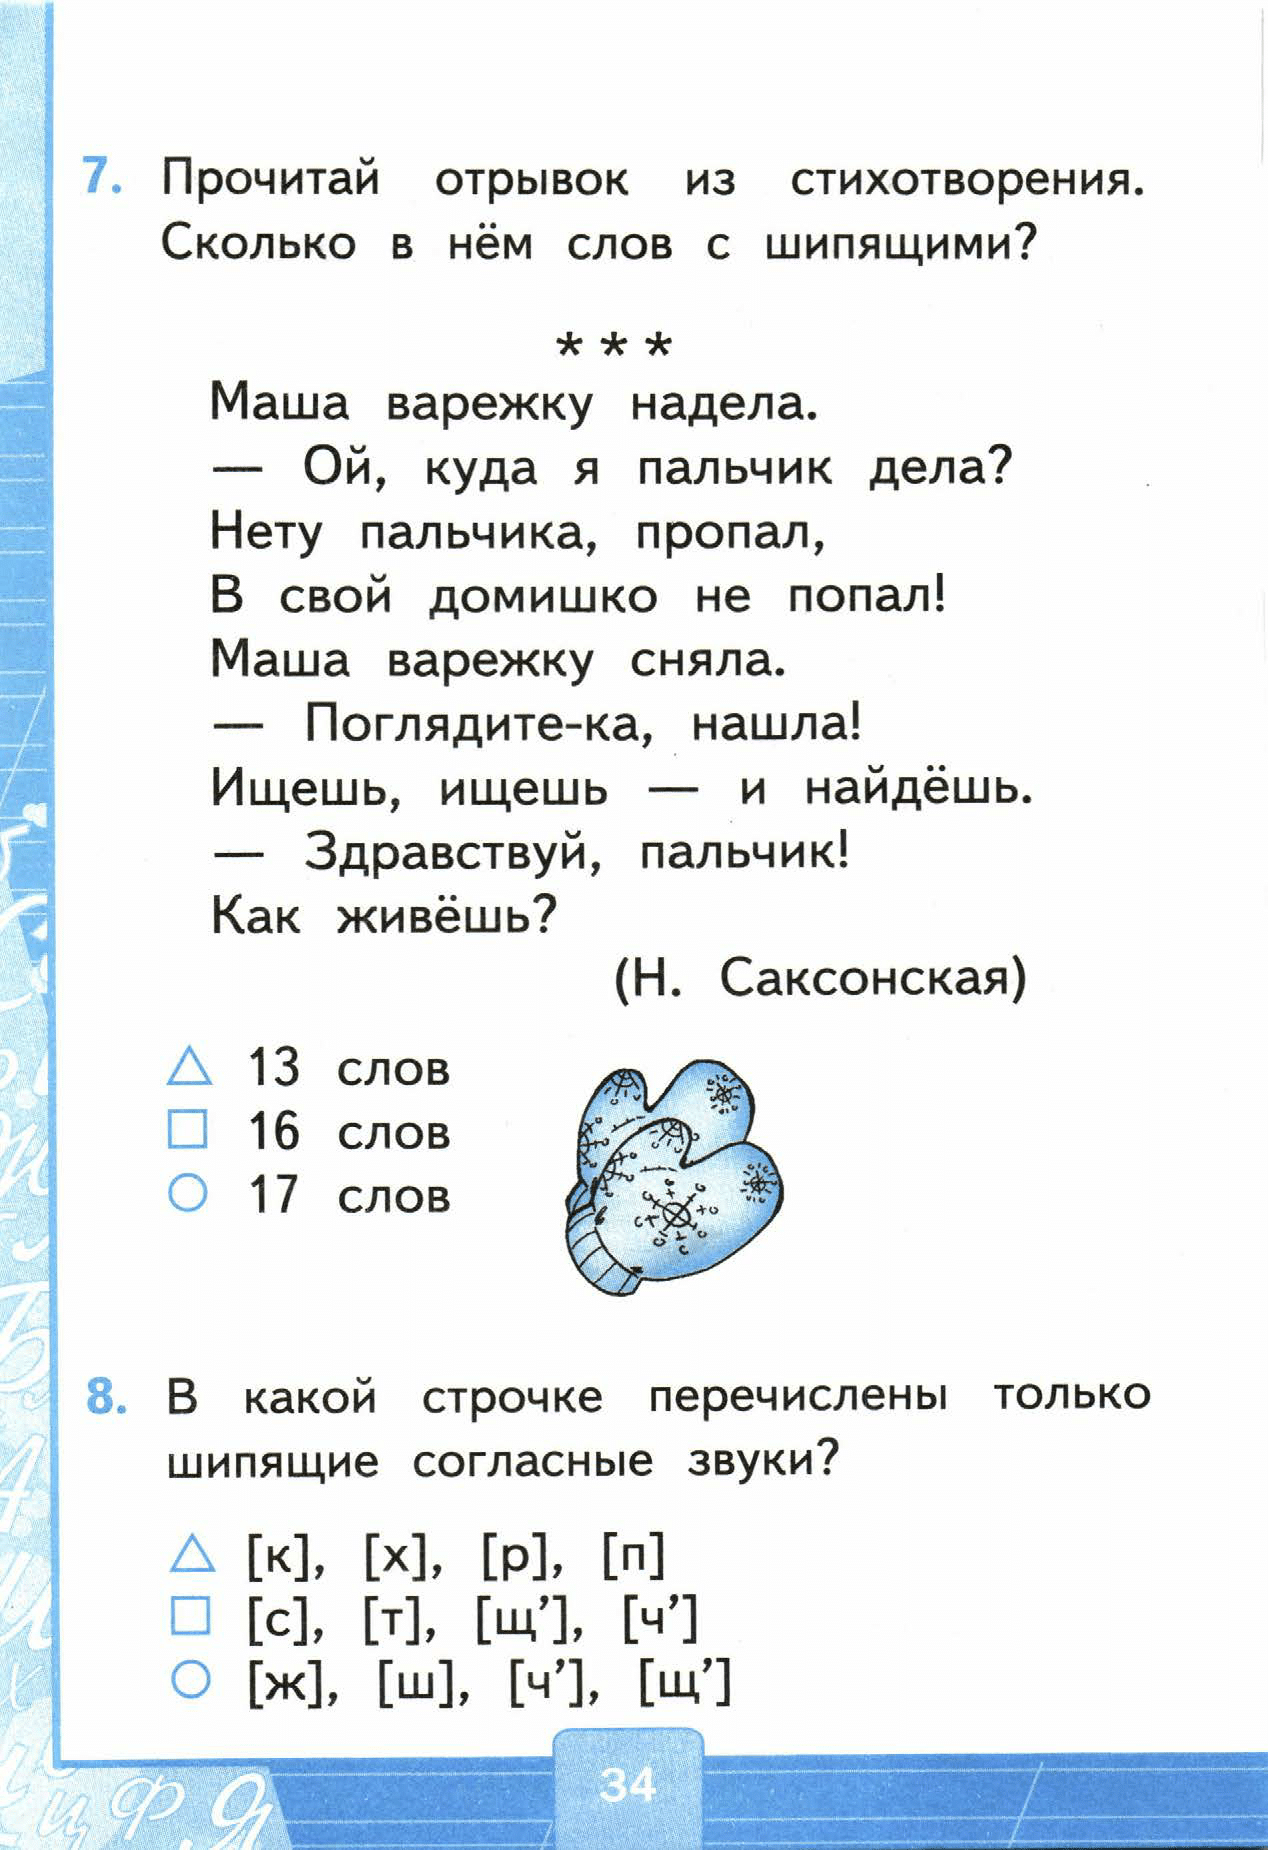 Страница (упражнение) 34 учебника. Страница 34 ГДЗ решебник тестов по русскому языку Тихомирова